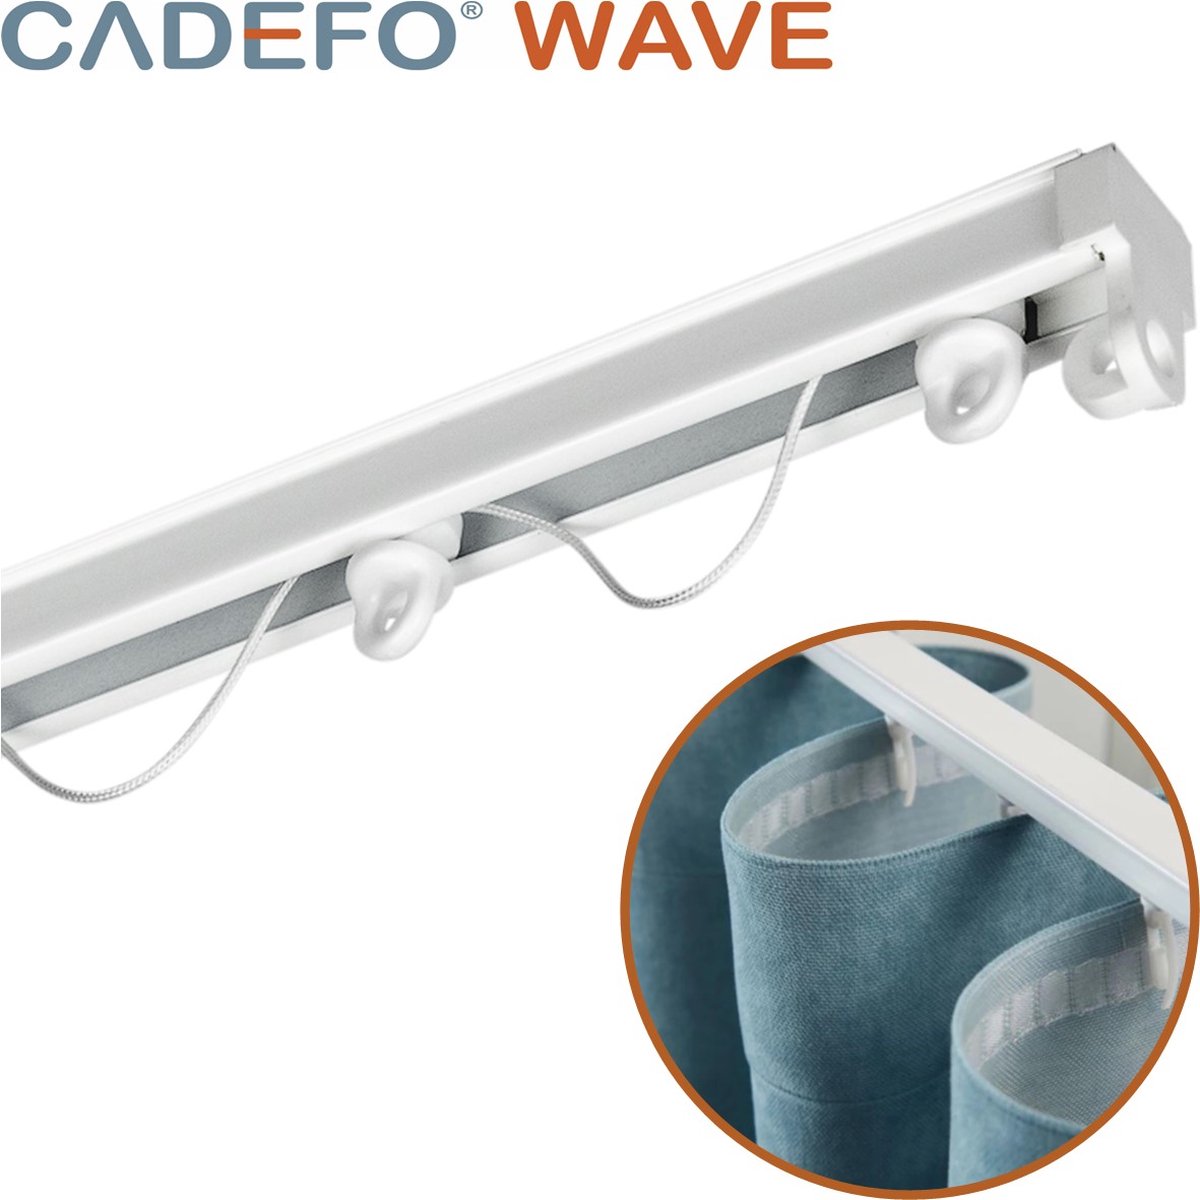 CADEFO WAVE (551 - 600 cm) Gordijnrails - Compleet op maat! - UIT 1 STUK - Leverbaar tot 6 meter - Plafondbevestiging - Lengte 552 cm